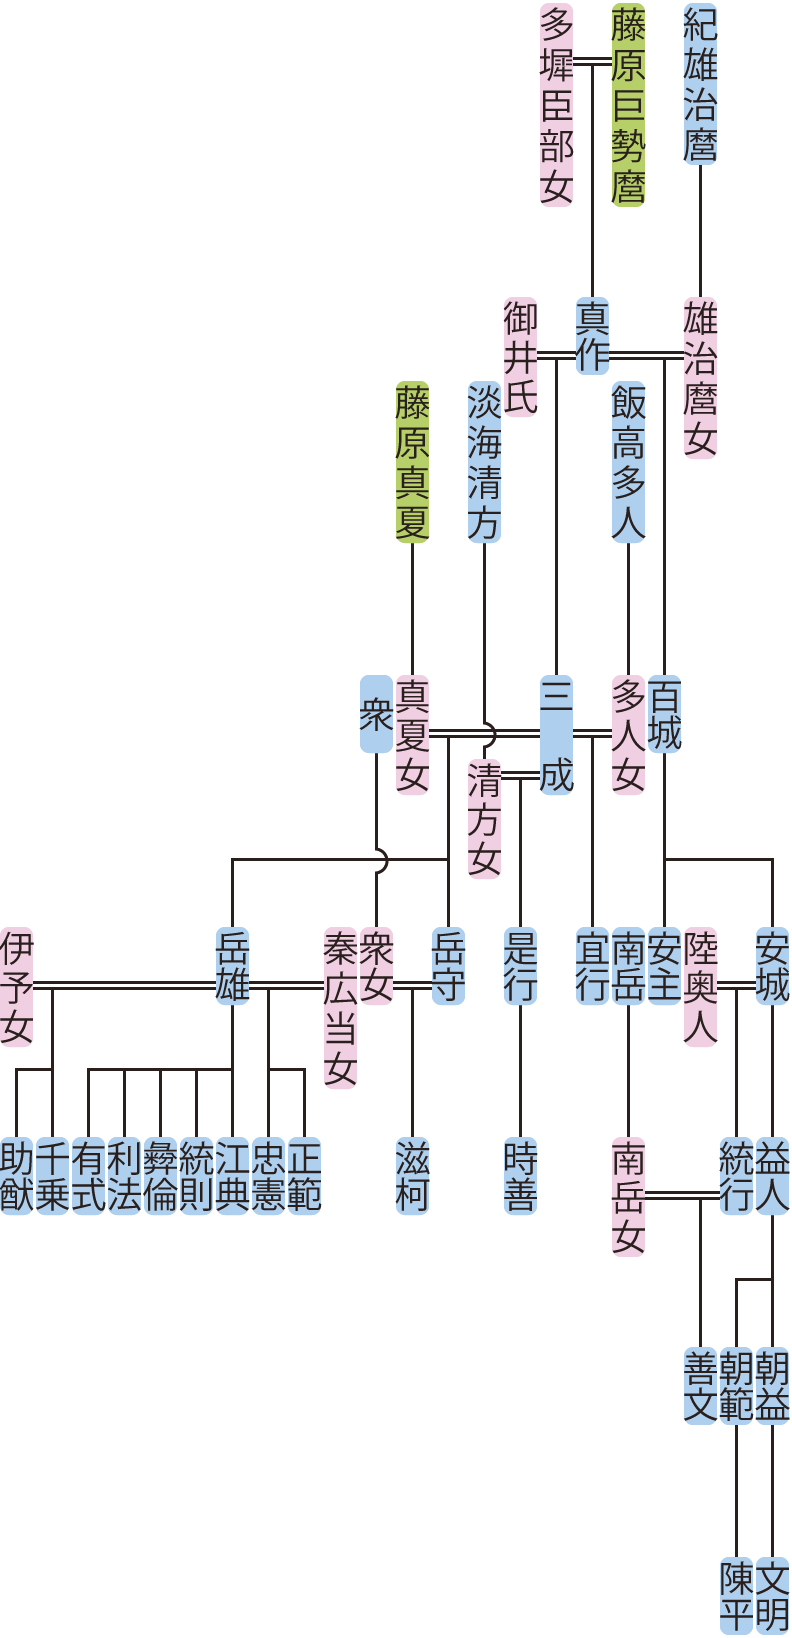 藤原百城・光成の系図